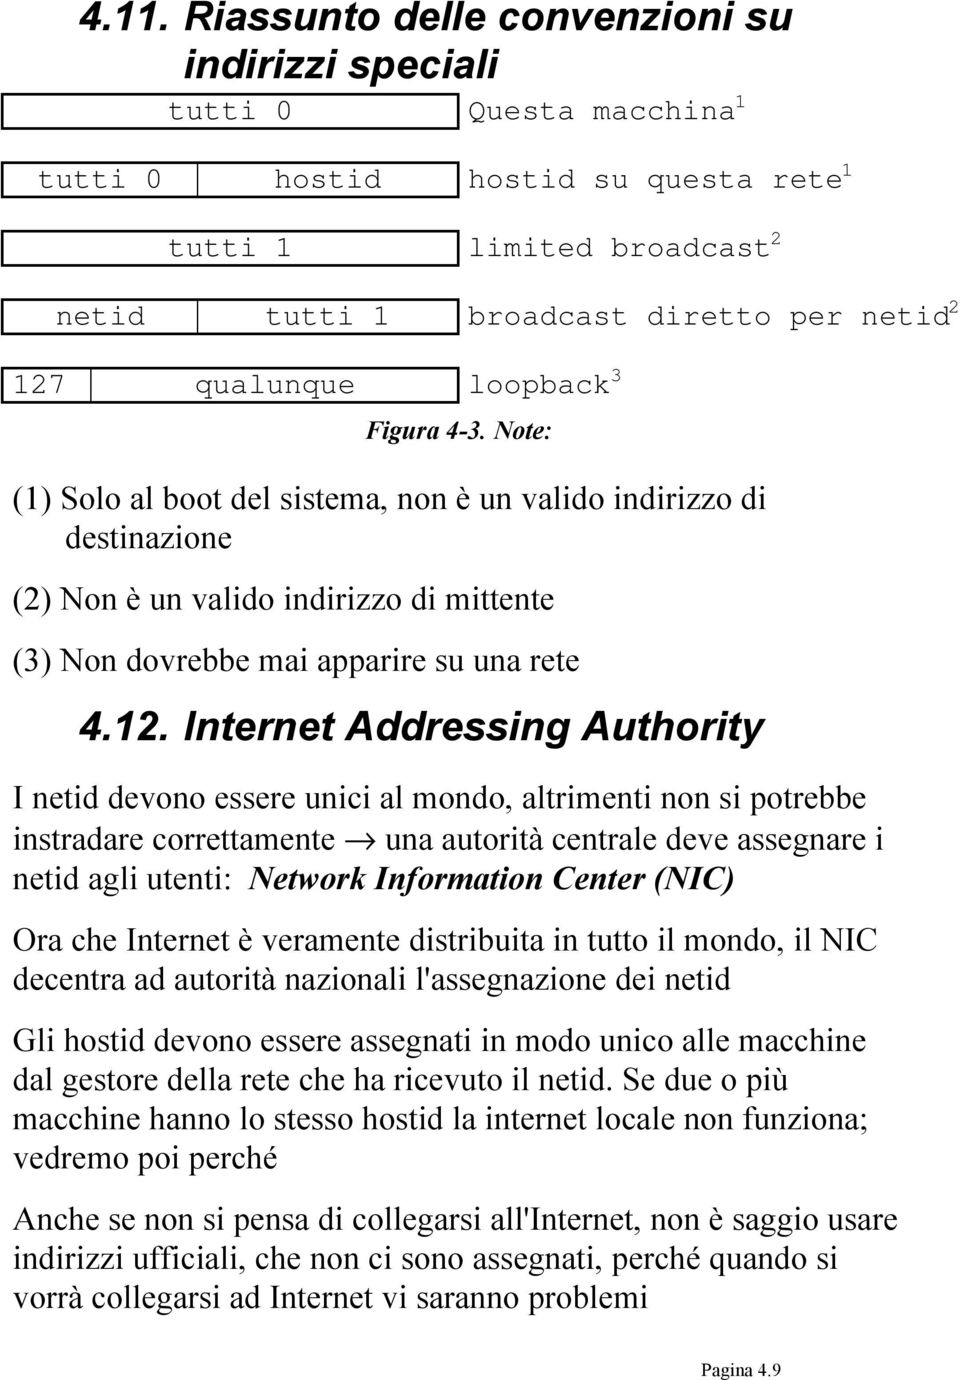 Internet Addressing Authority I netid devono essere unici al mondo, altrimenti non si potrebbe instradare correttamente una autorità centrale deve assegnare i netid agli utenti: Network Information